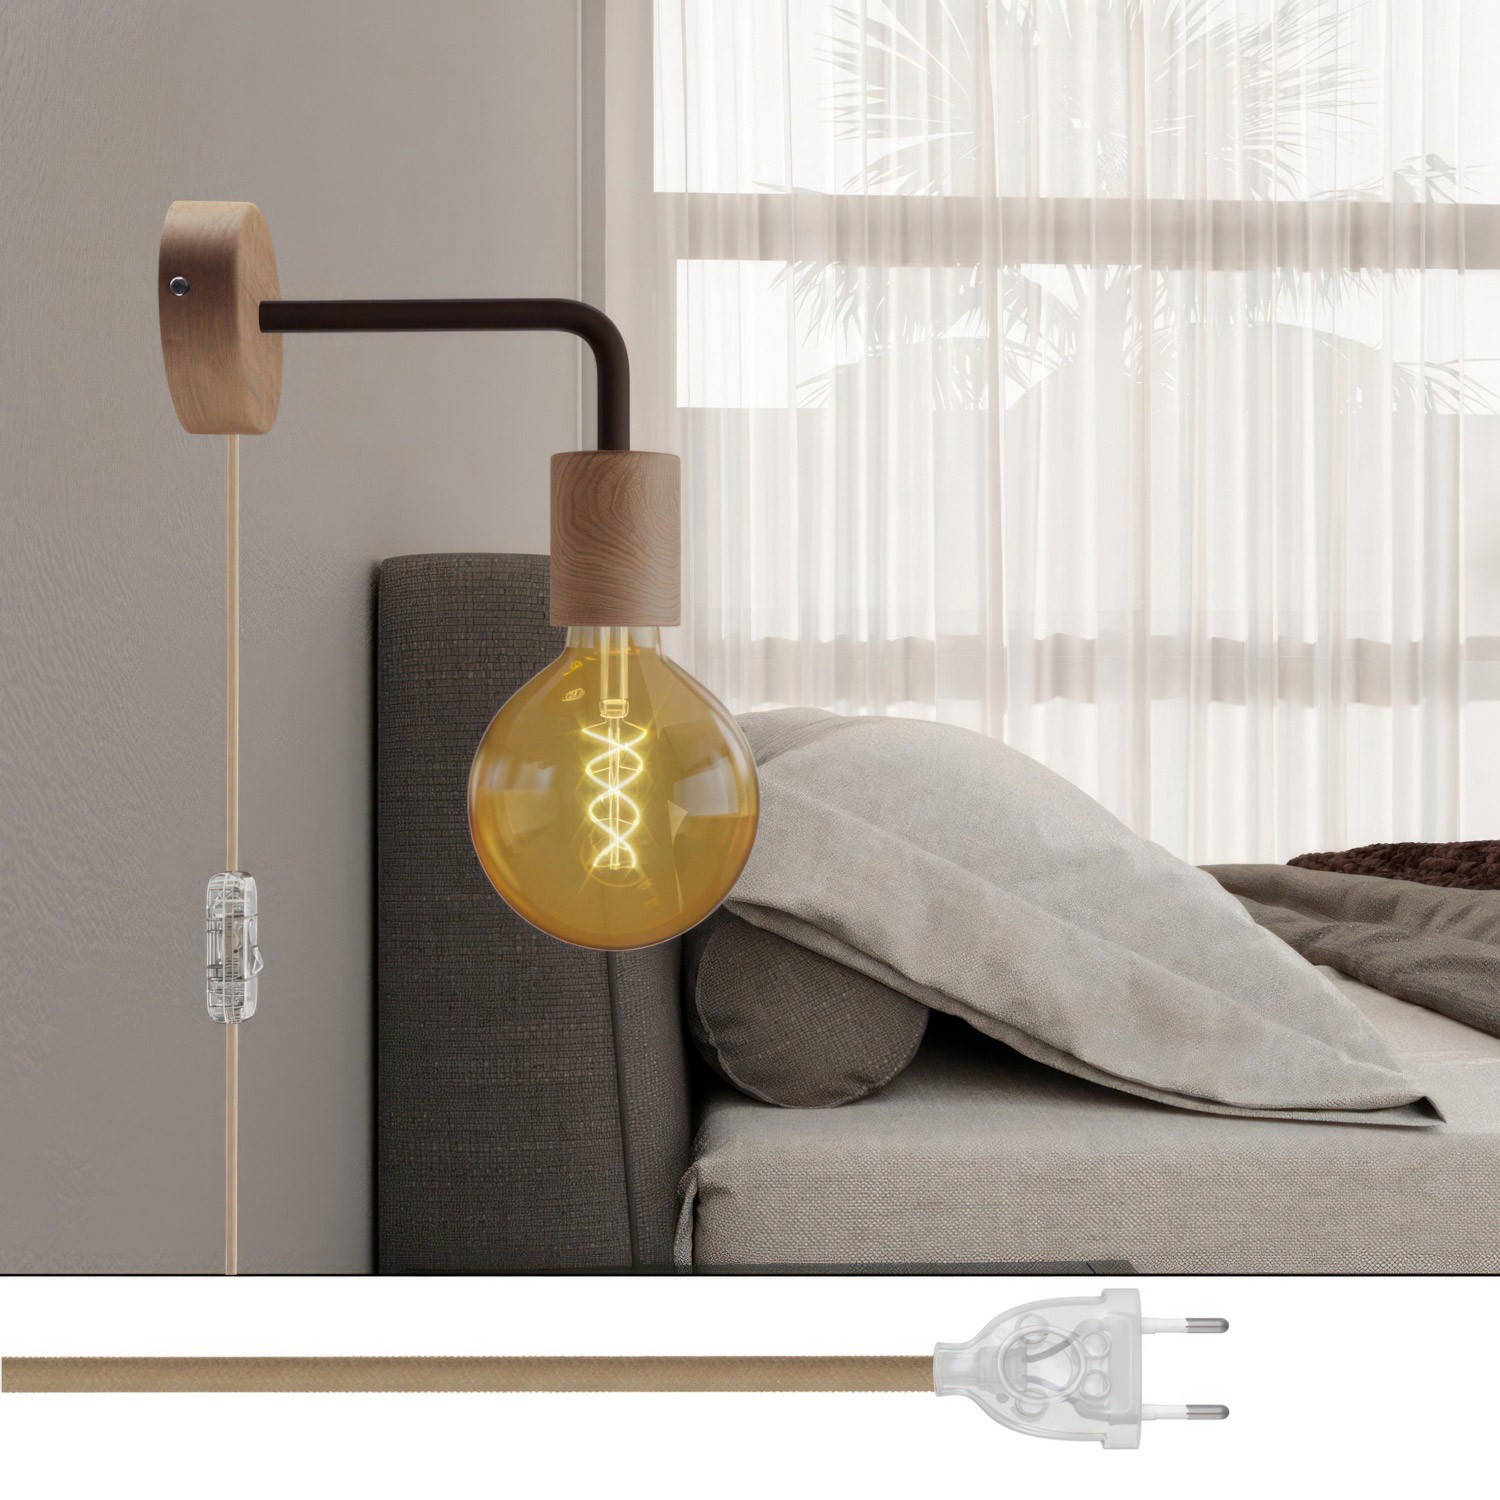 Lampe Spostaluce en bois avec extension courbée